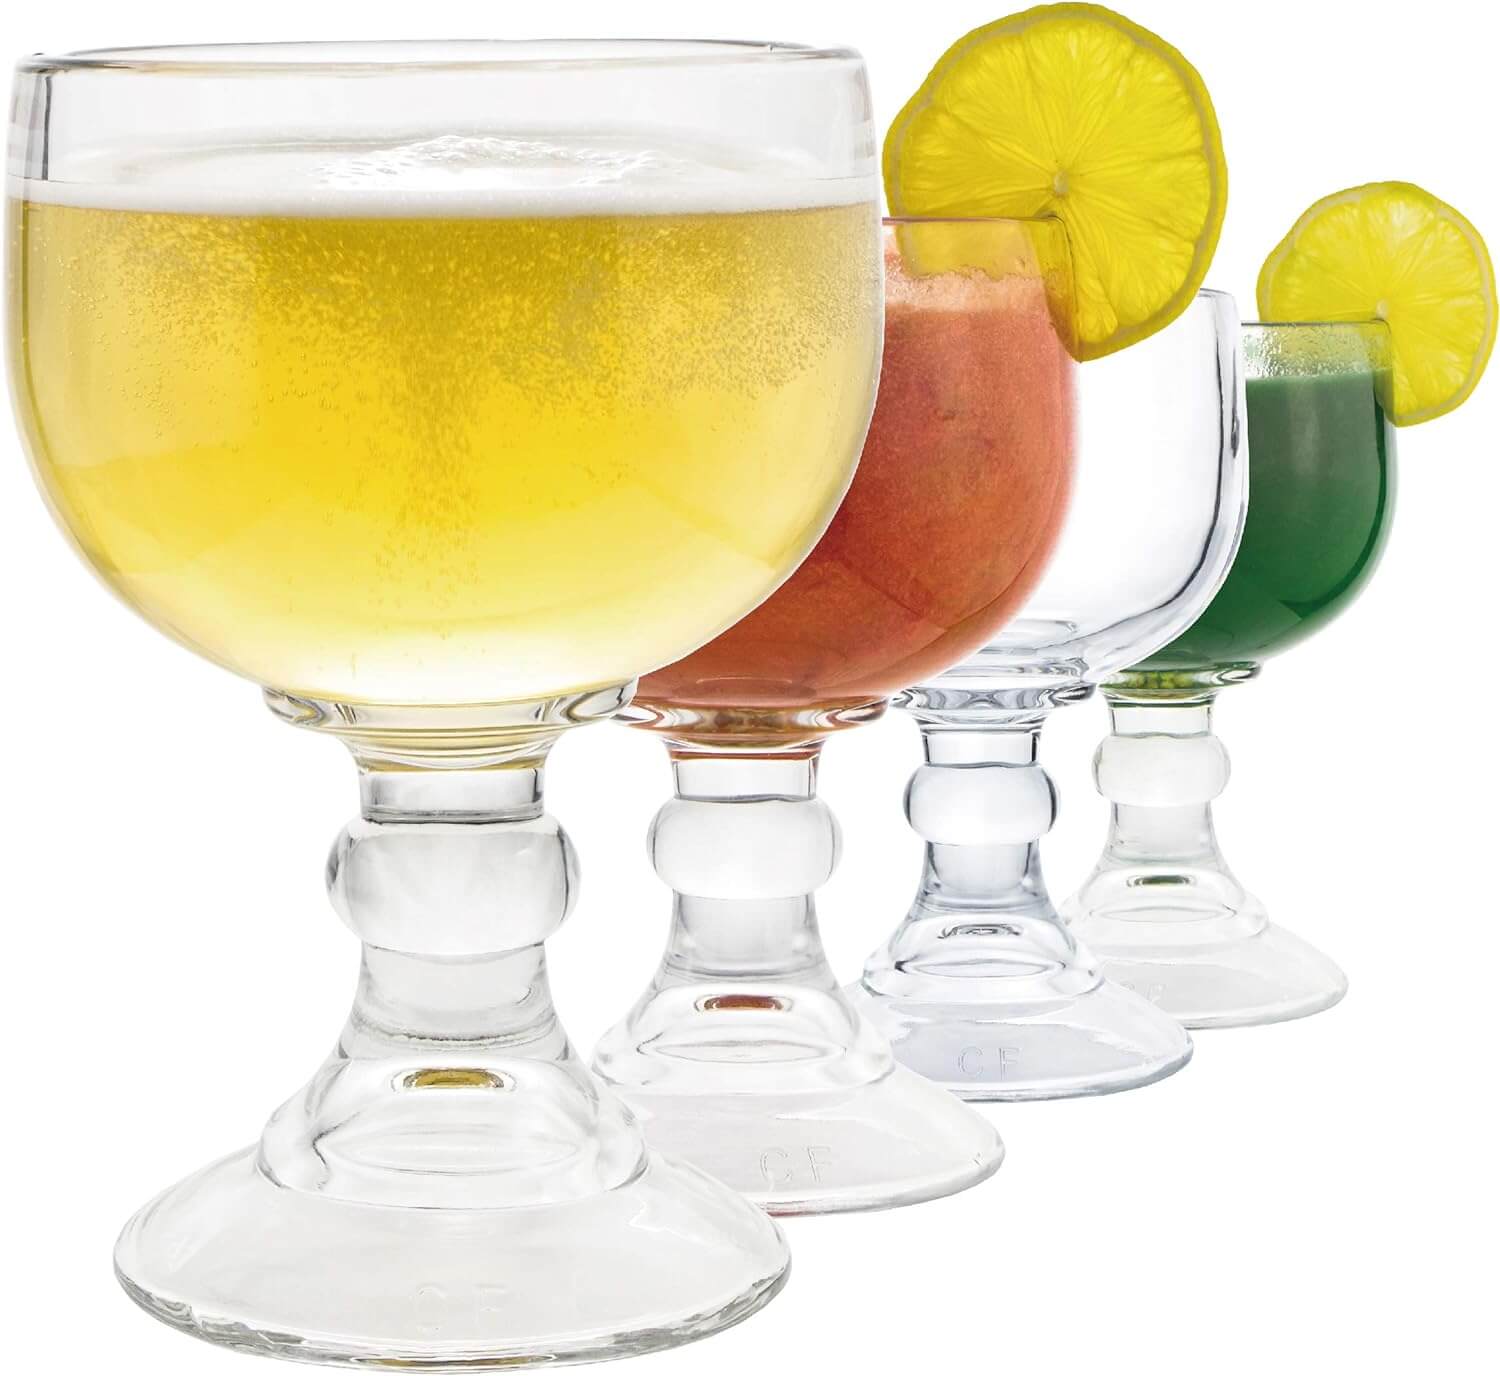 Beer/cocktail goblet glasses